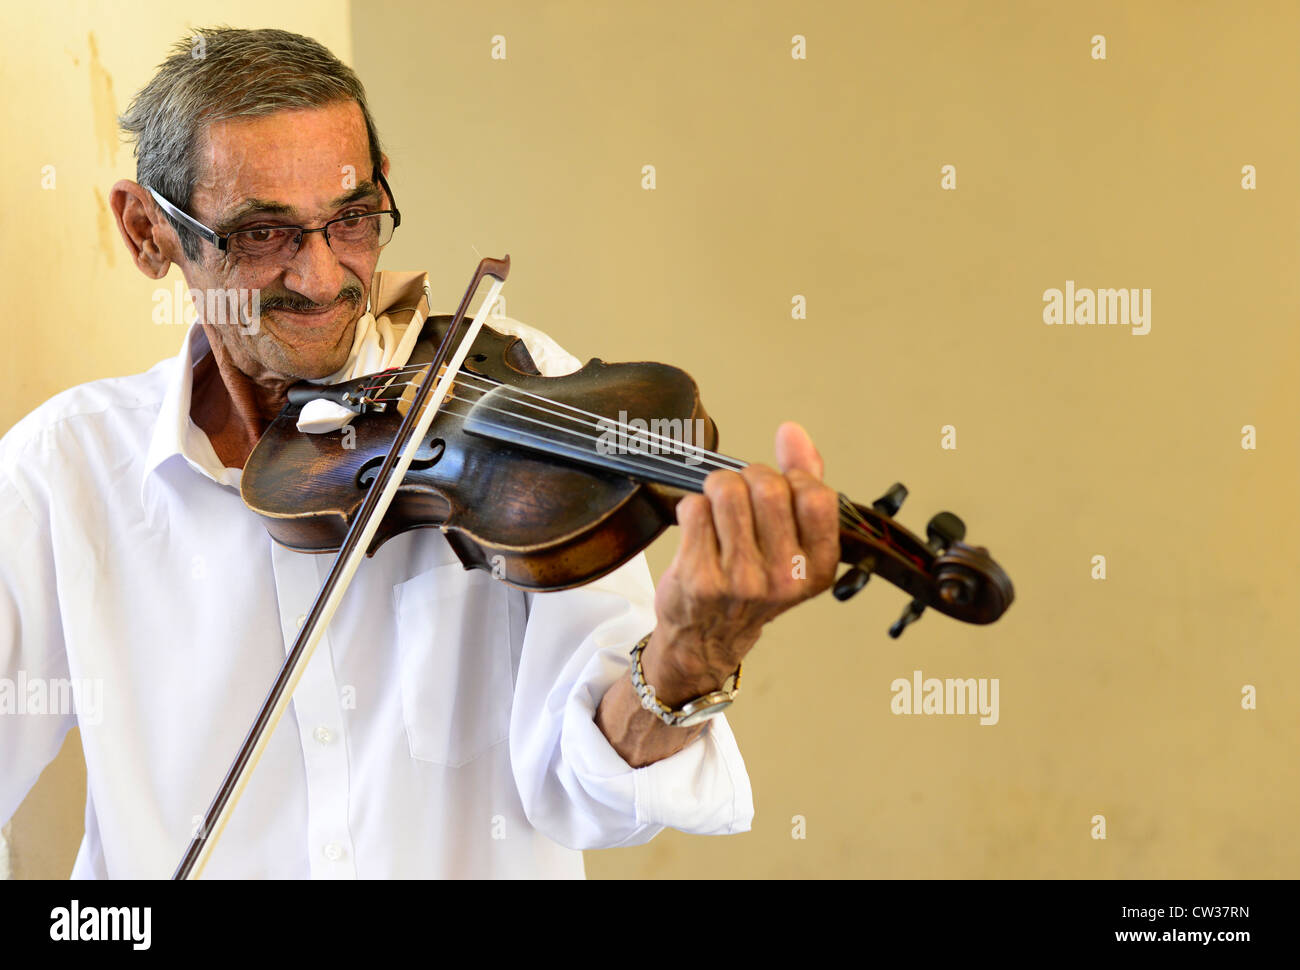 Un uomo zingara ( Roma ) suonando il suo violino nella città vecchia di Bratislava, Slovacchia. Foto Stock